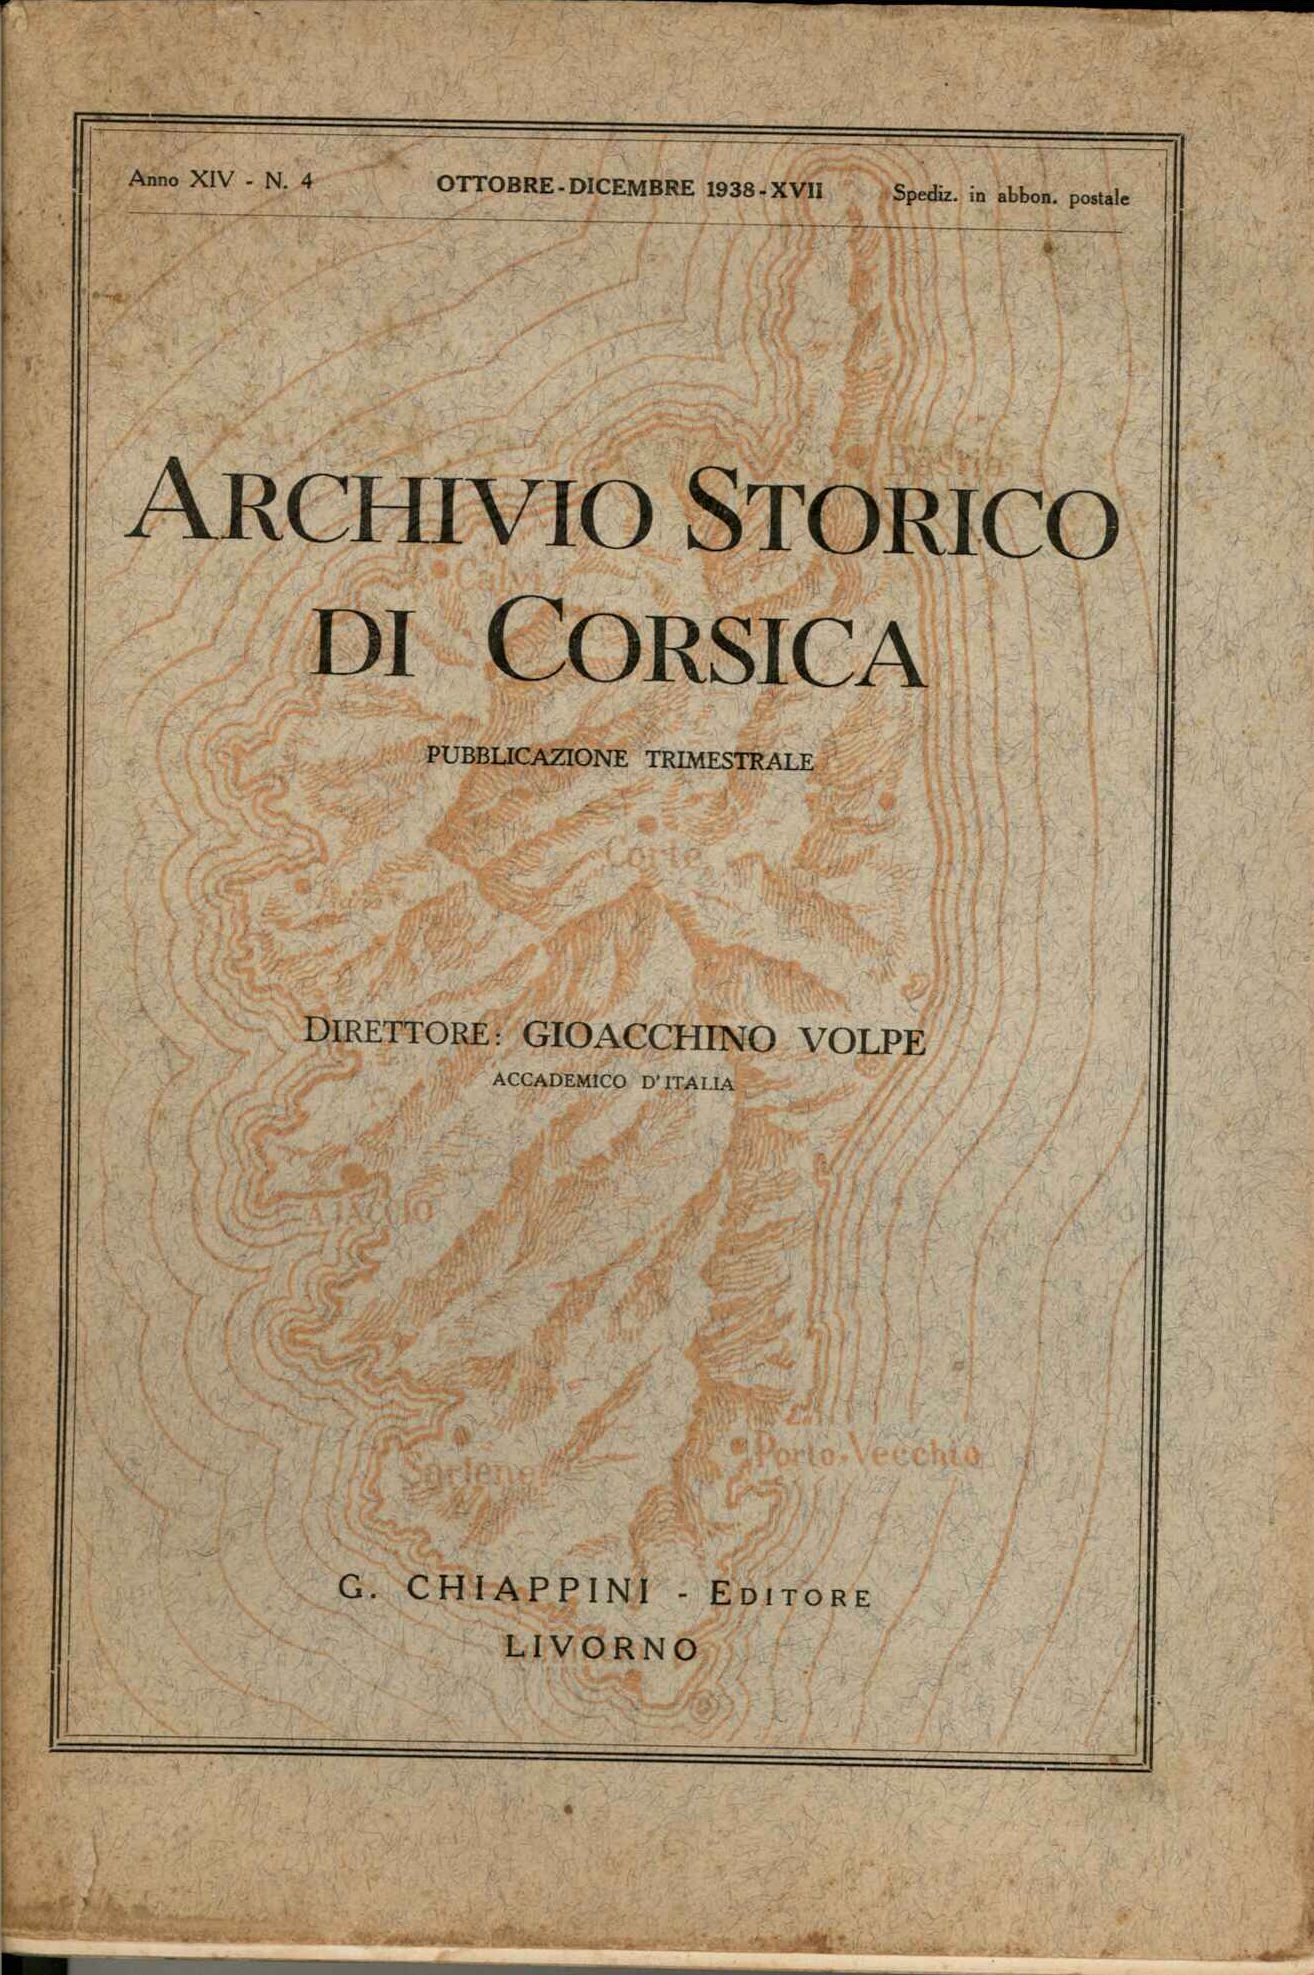 Archivio Storico di Corsica. Anno XIV - N. 4 Ottobre Dicembre 19